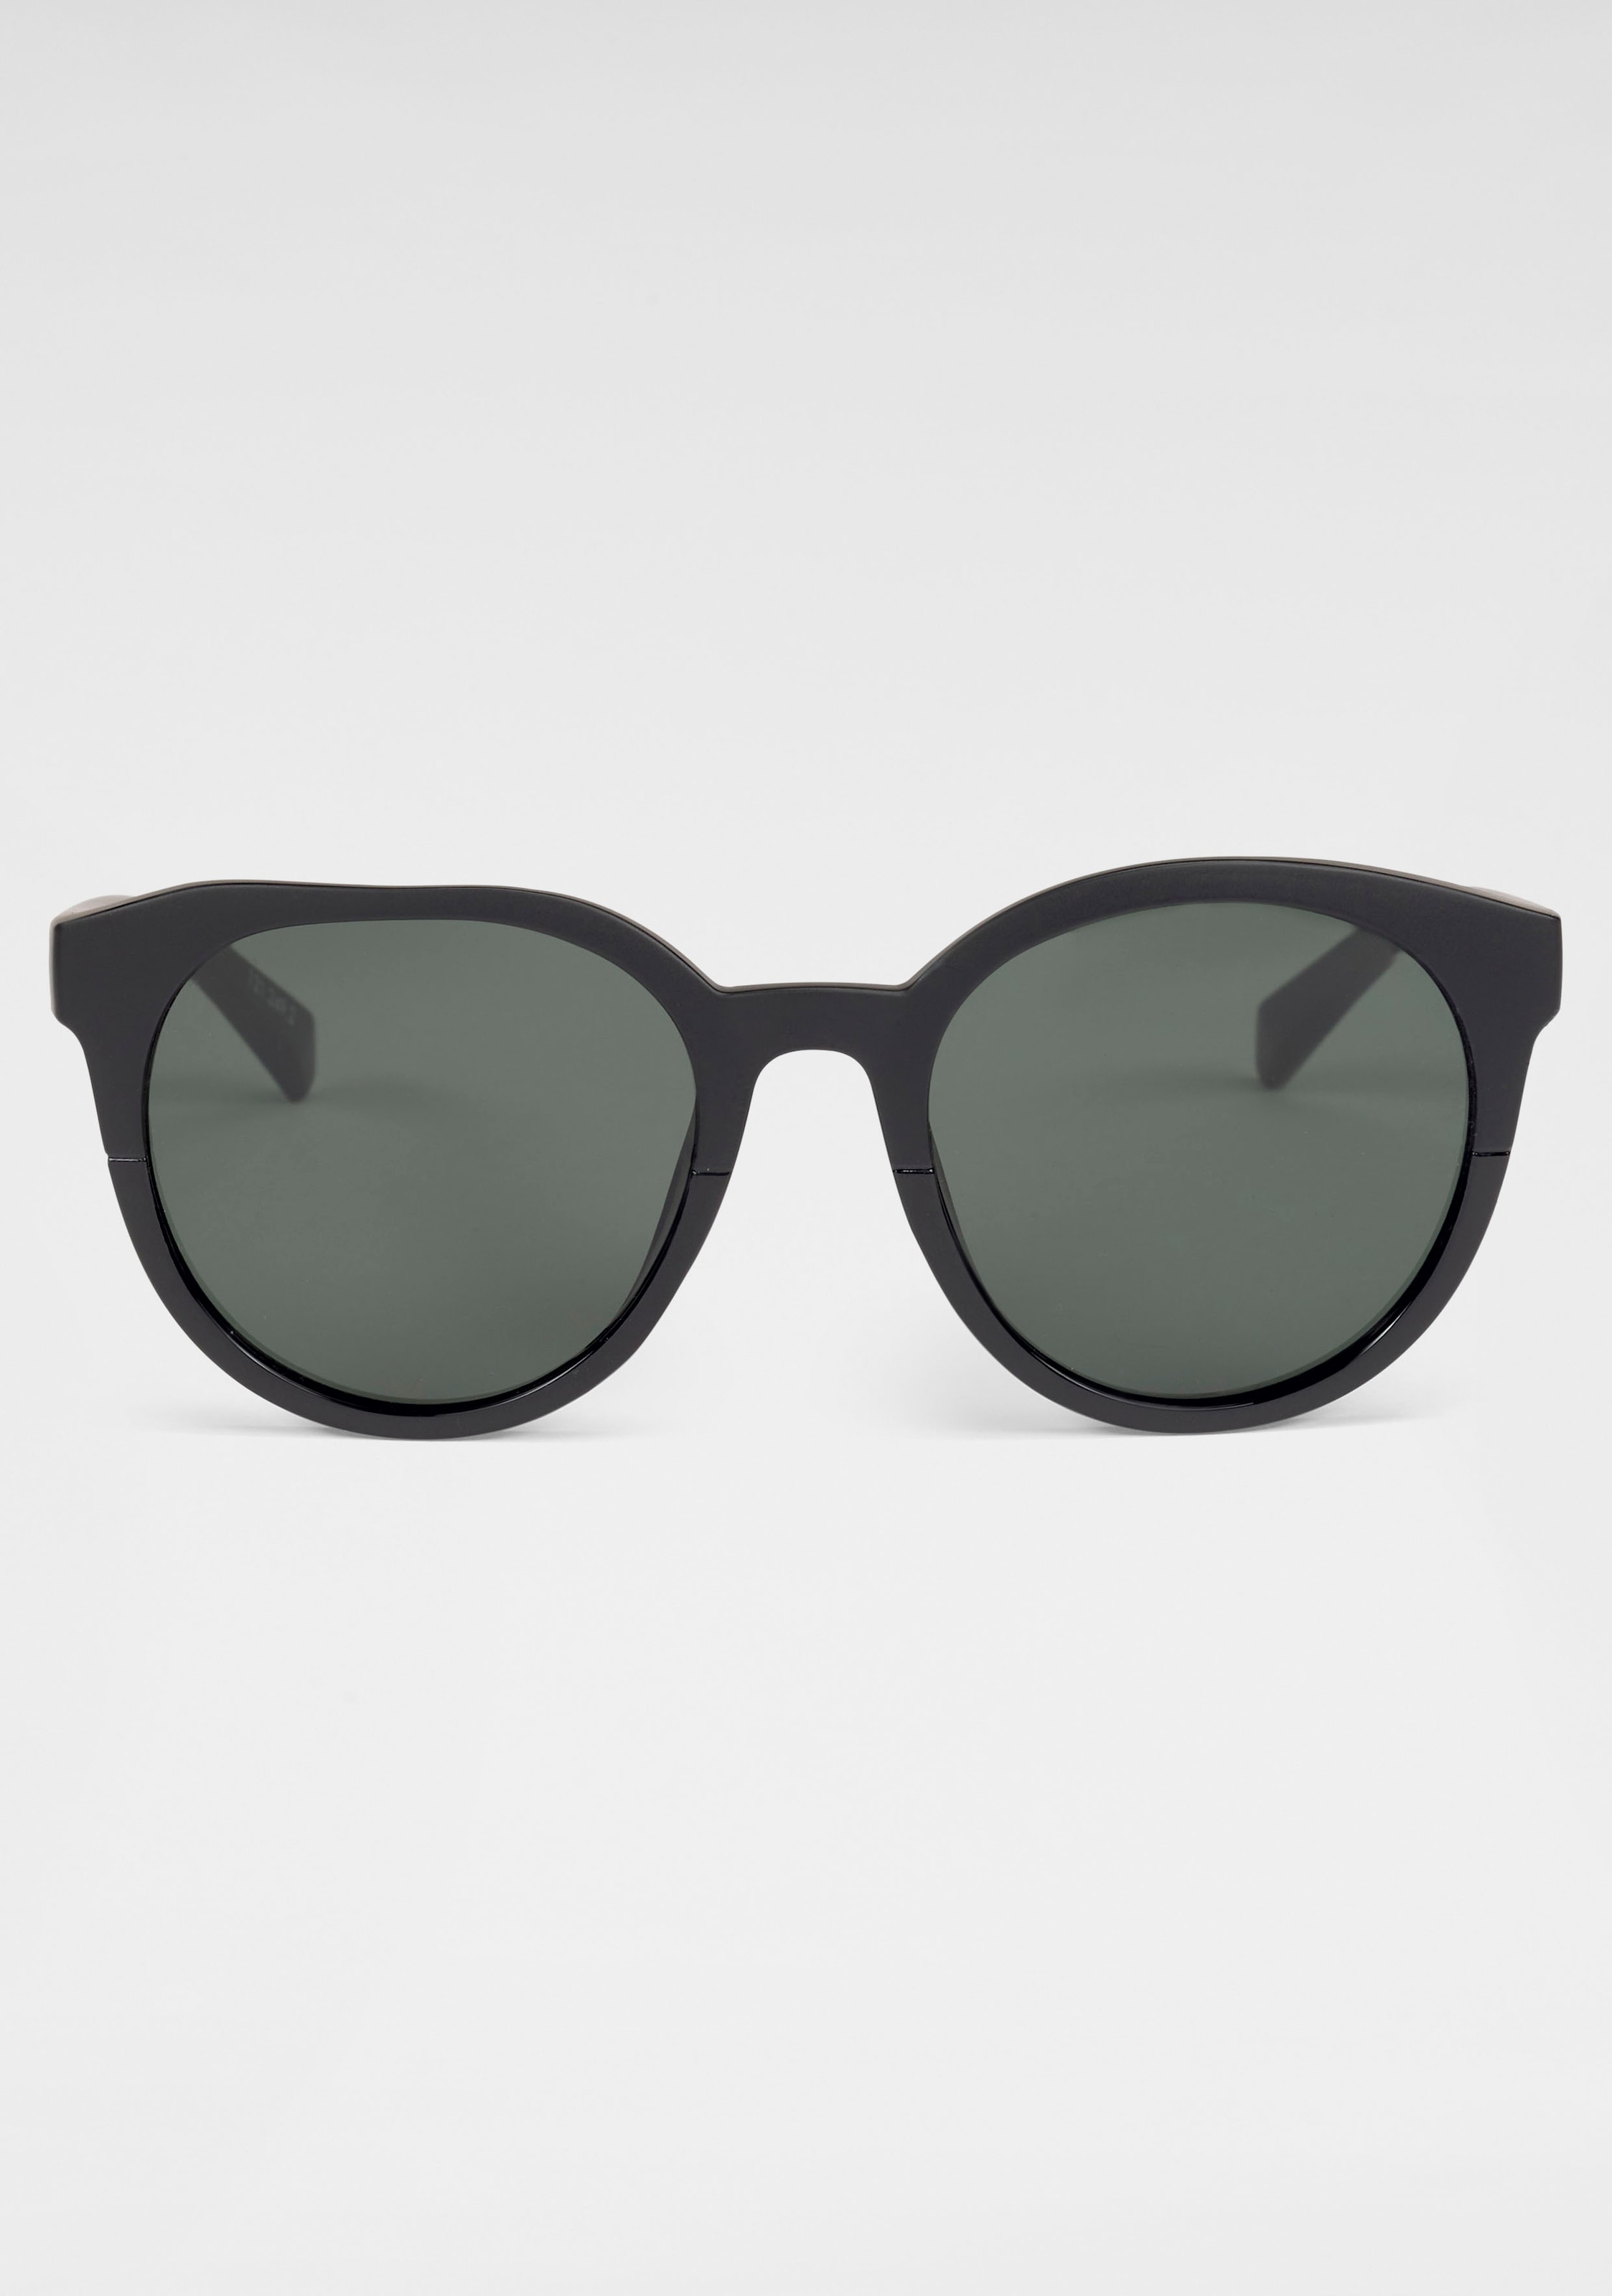 catwalk Eyewear Sonnenbrille, Damen-Sonnenbrille